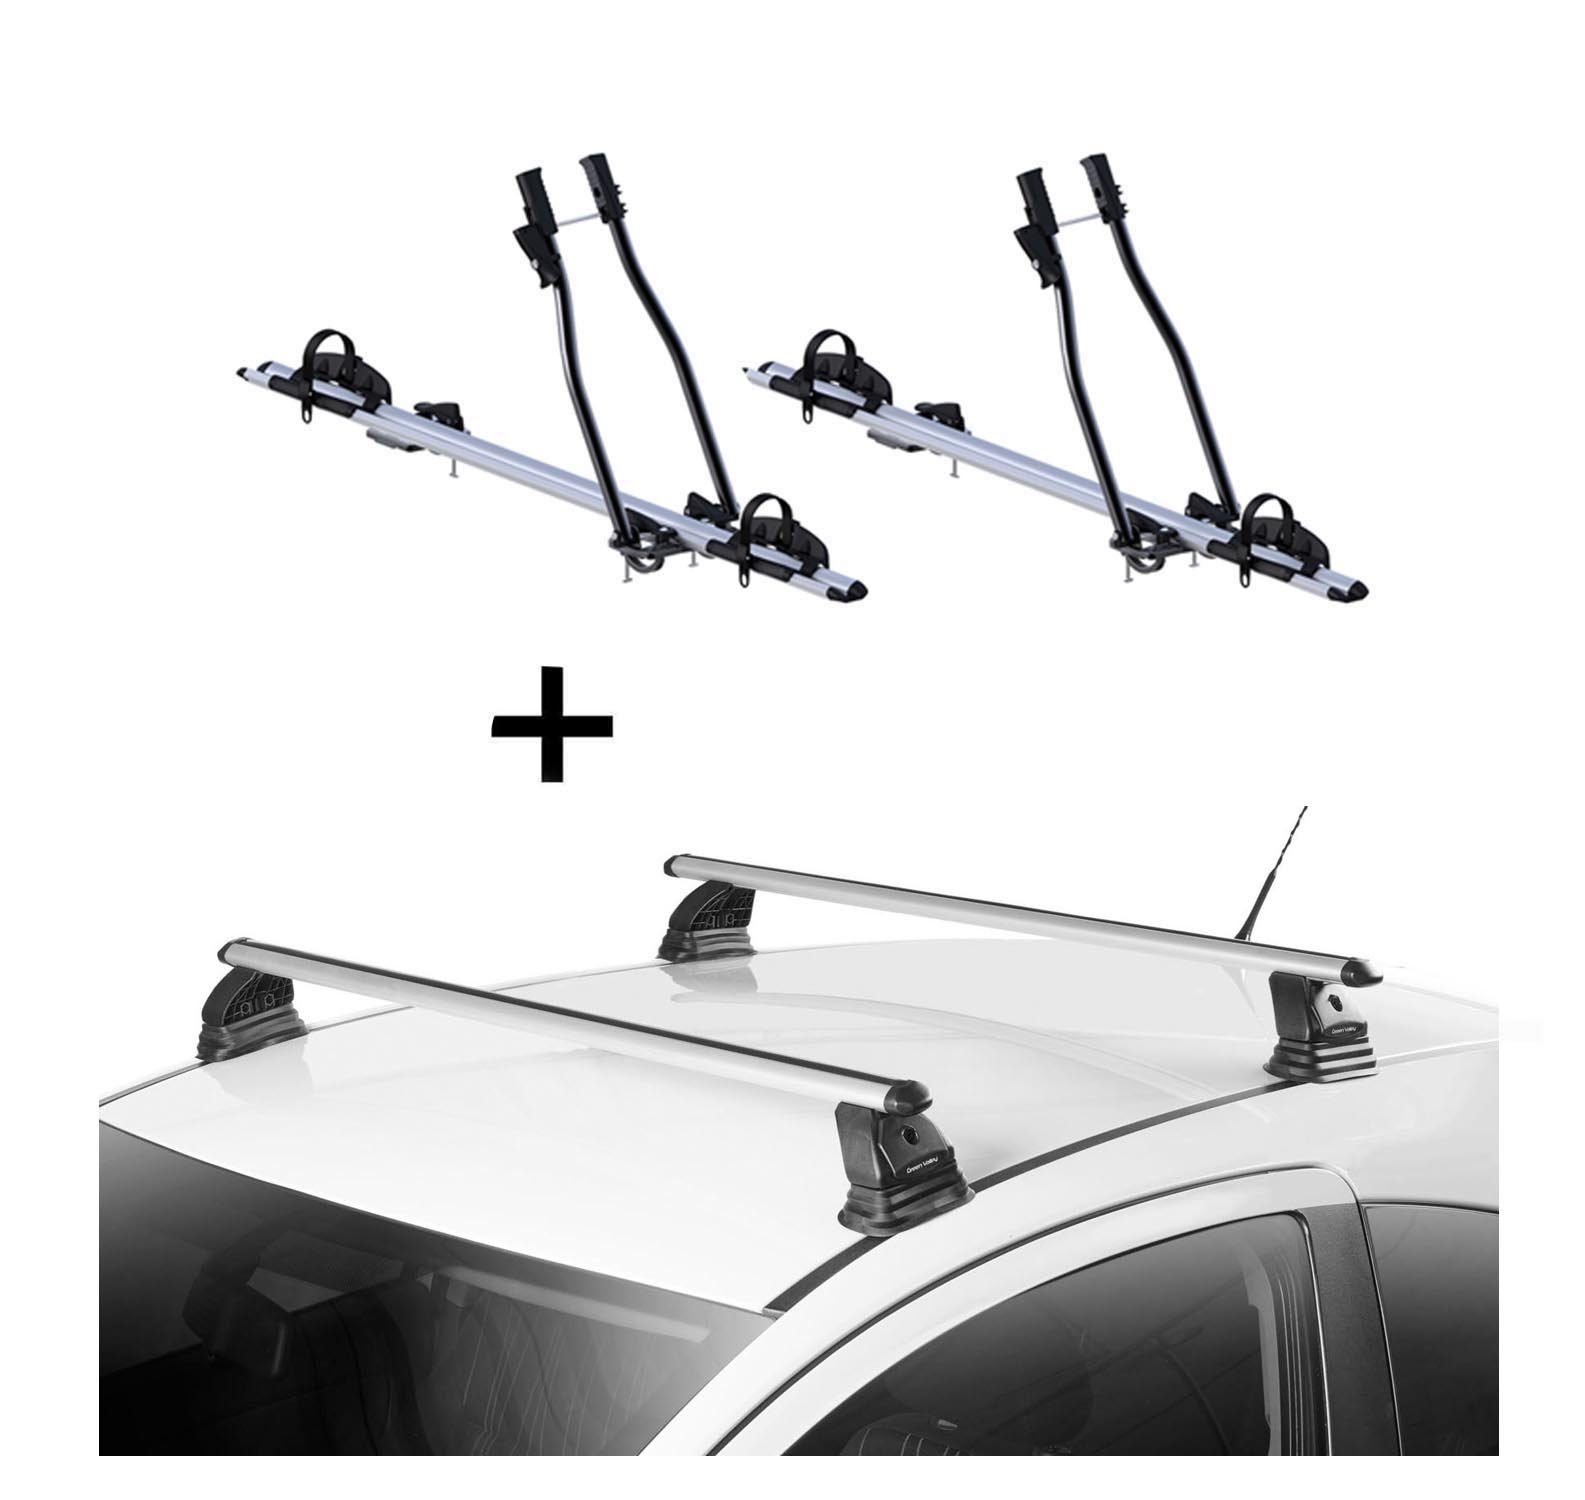 VDP Dachträger, 2x Fahrradträger SAGITTAR + Dachträger VDP EVO ALU kompatibel mit Volkswagen Caddy IV 3-5 Türer ab 2015